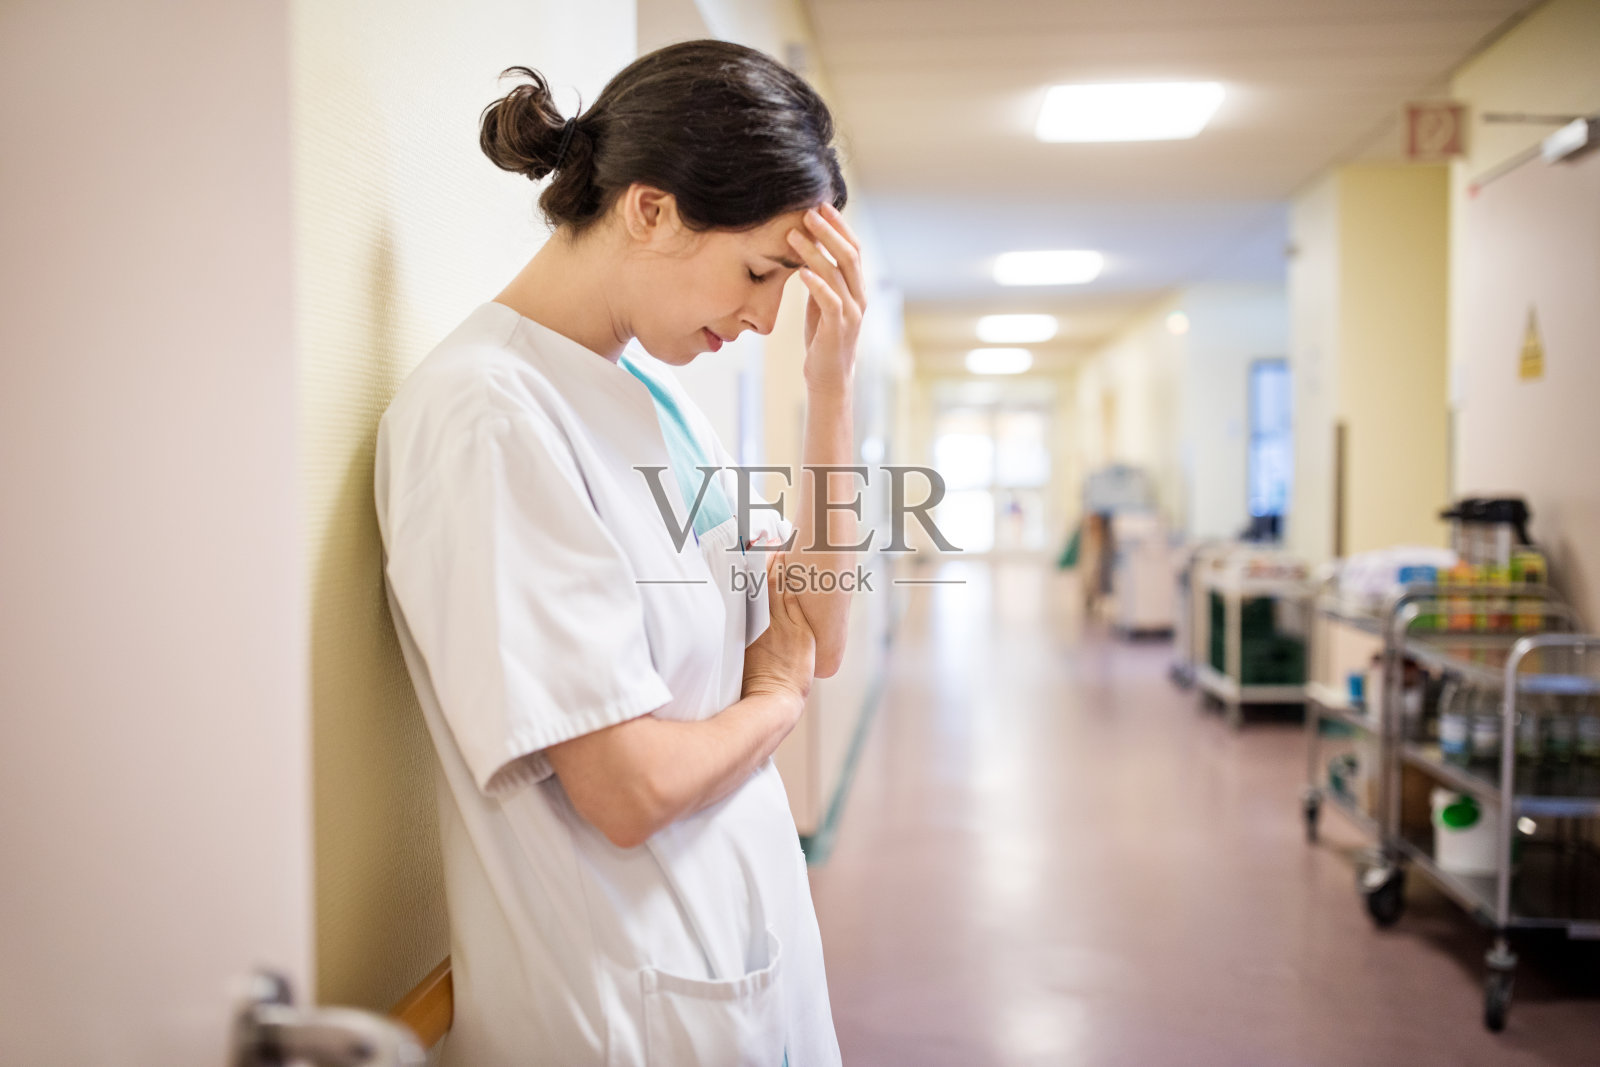 女护士沮丧地站在医院走廊上照片摄影图片